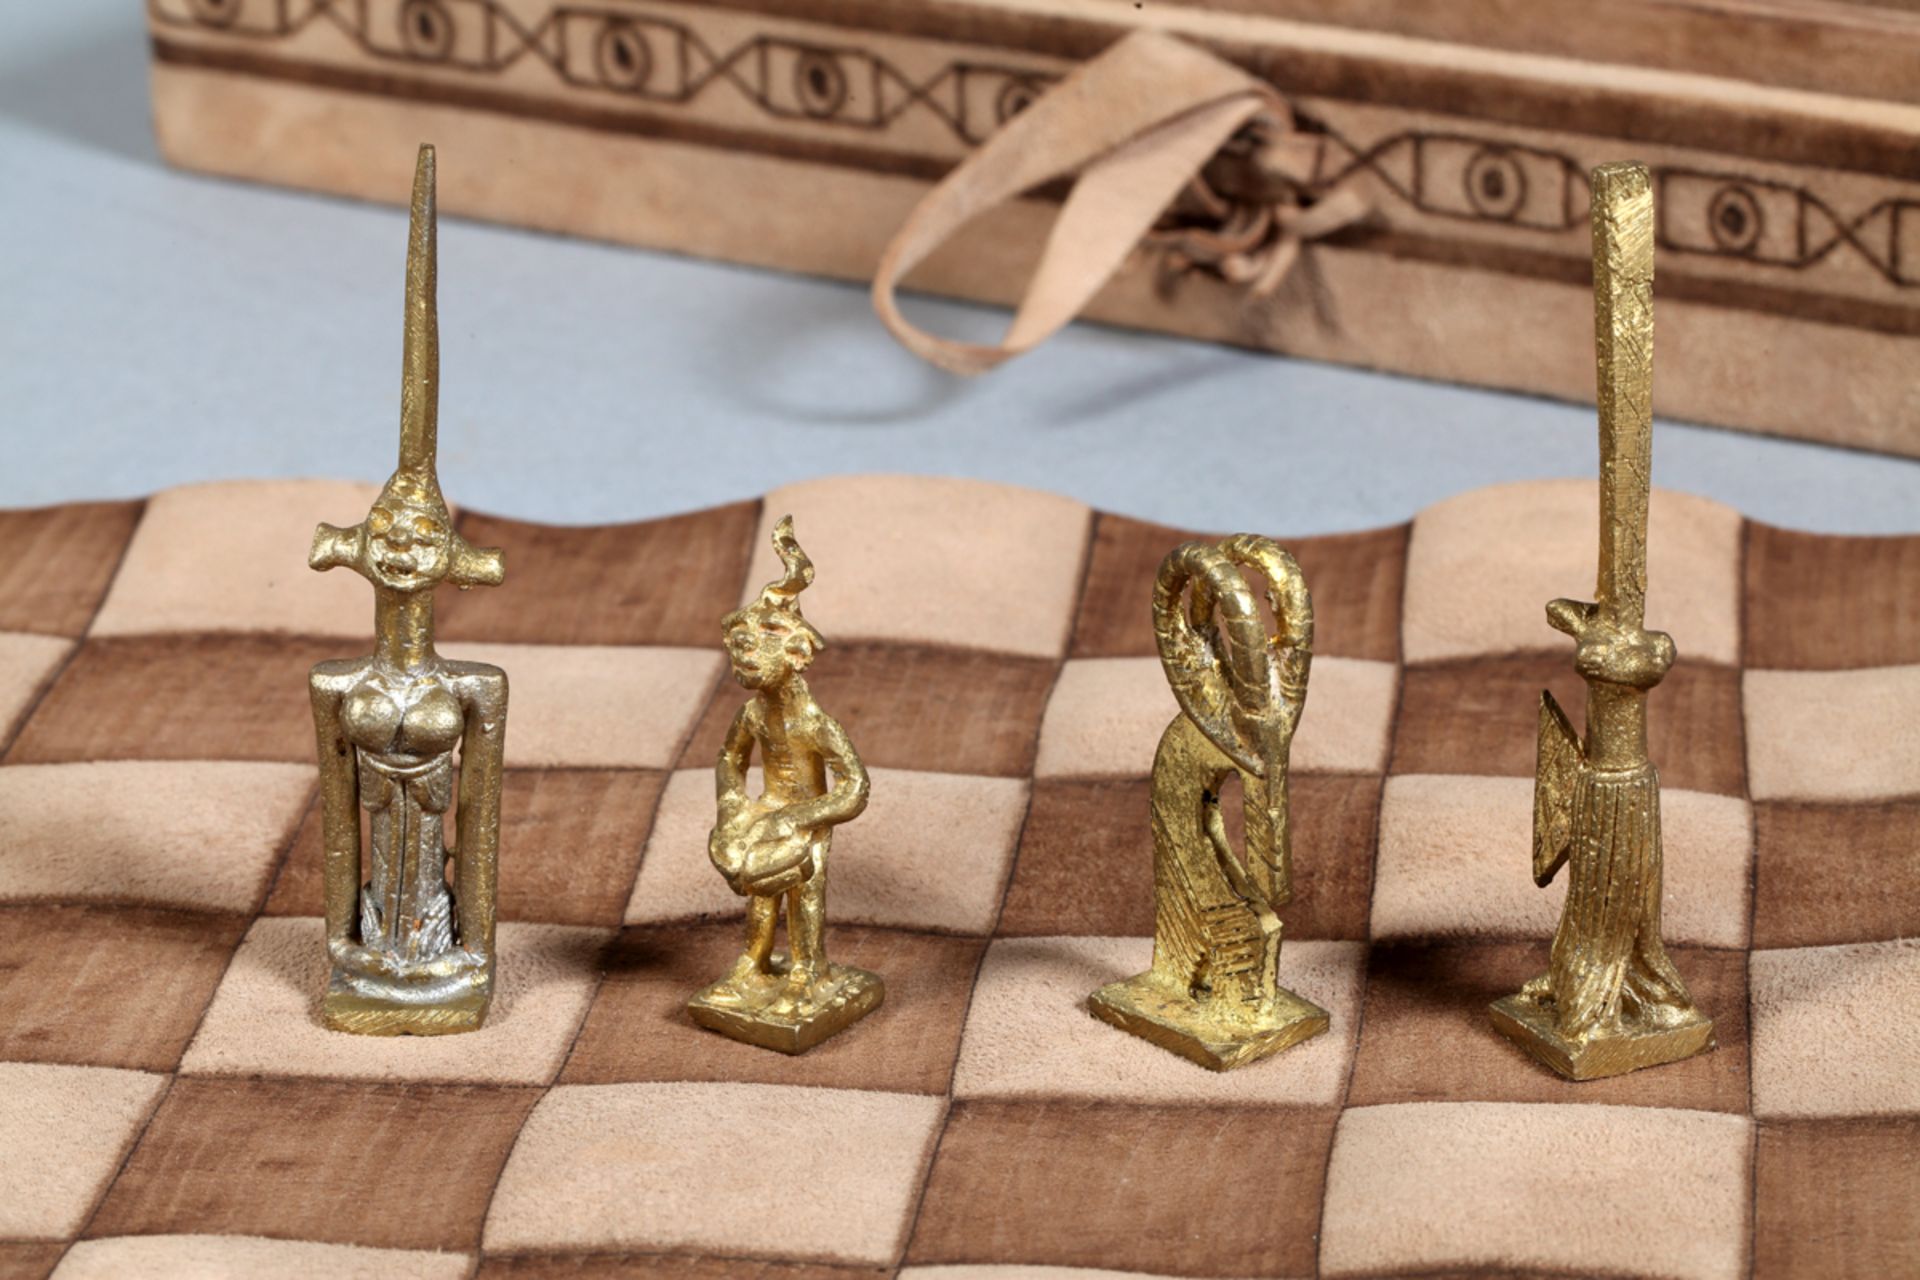 Spiele-Koffer für Schach und wohl Dame, Westafrika, wohl Burkina Faso, 20. Jh. - Image 3 of 3